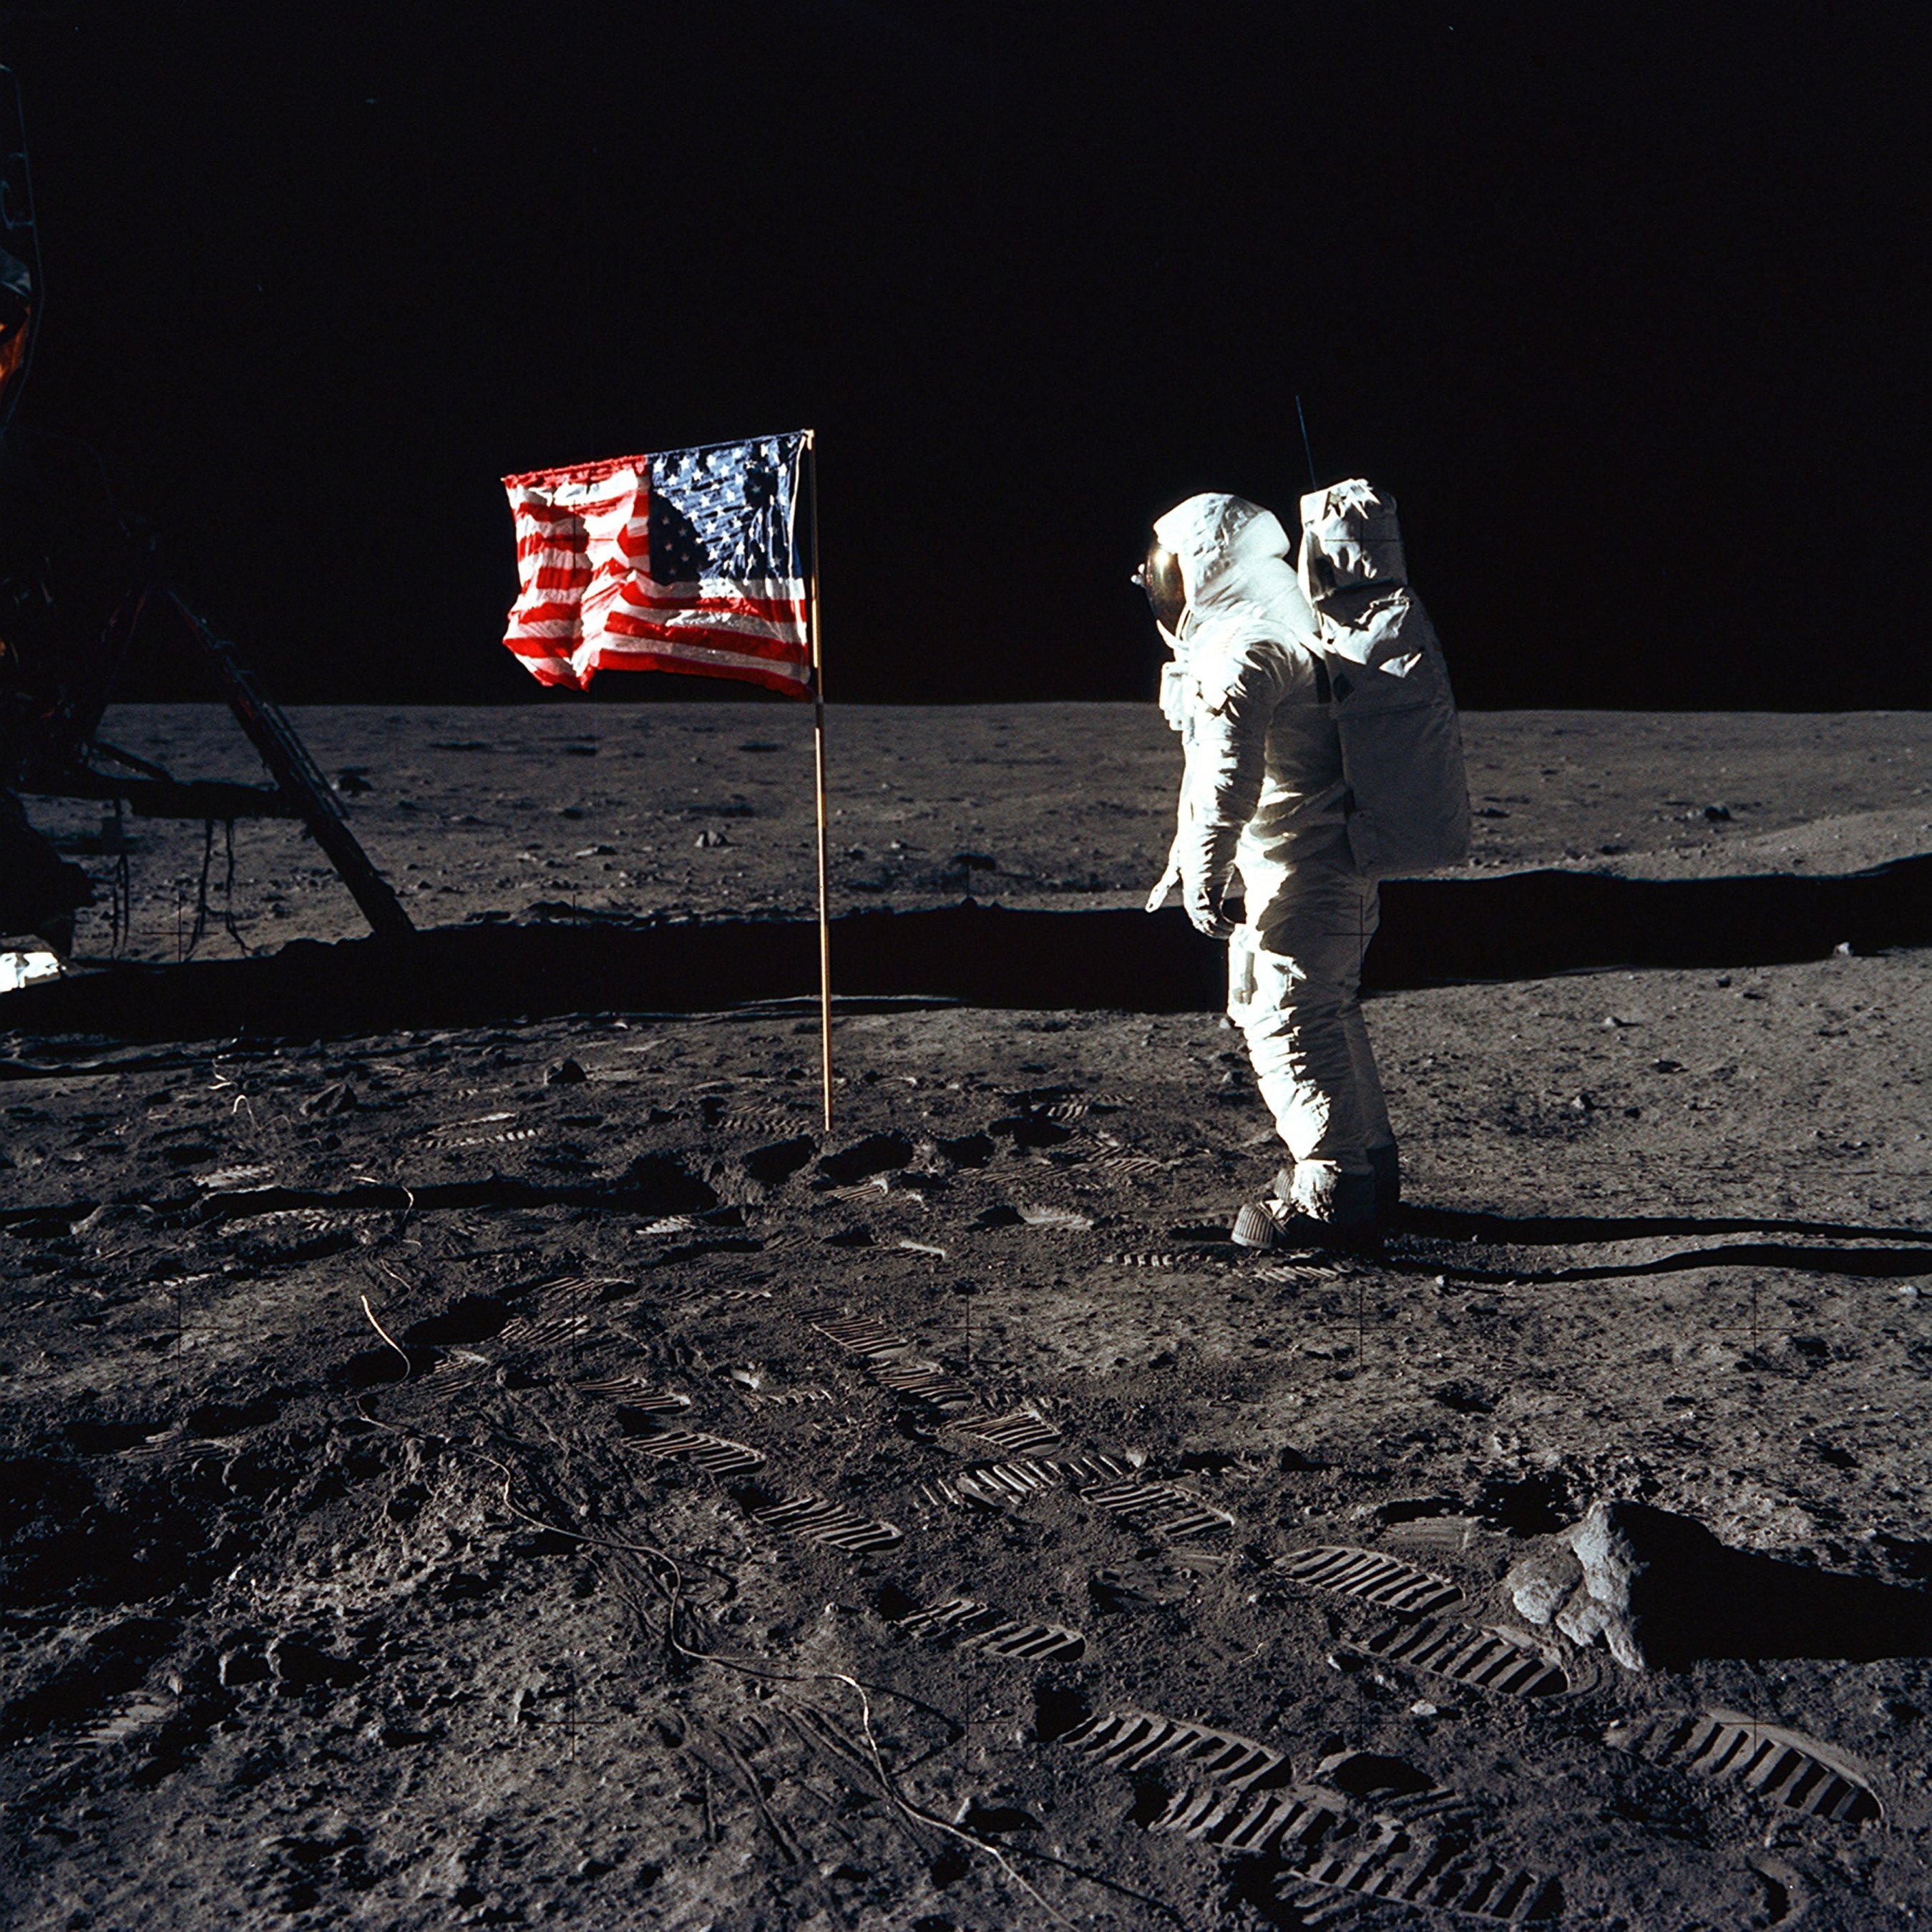 Buzz Aldrin est alors à 10 mètres au nord du module lunaire